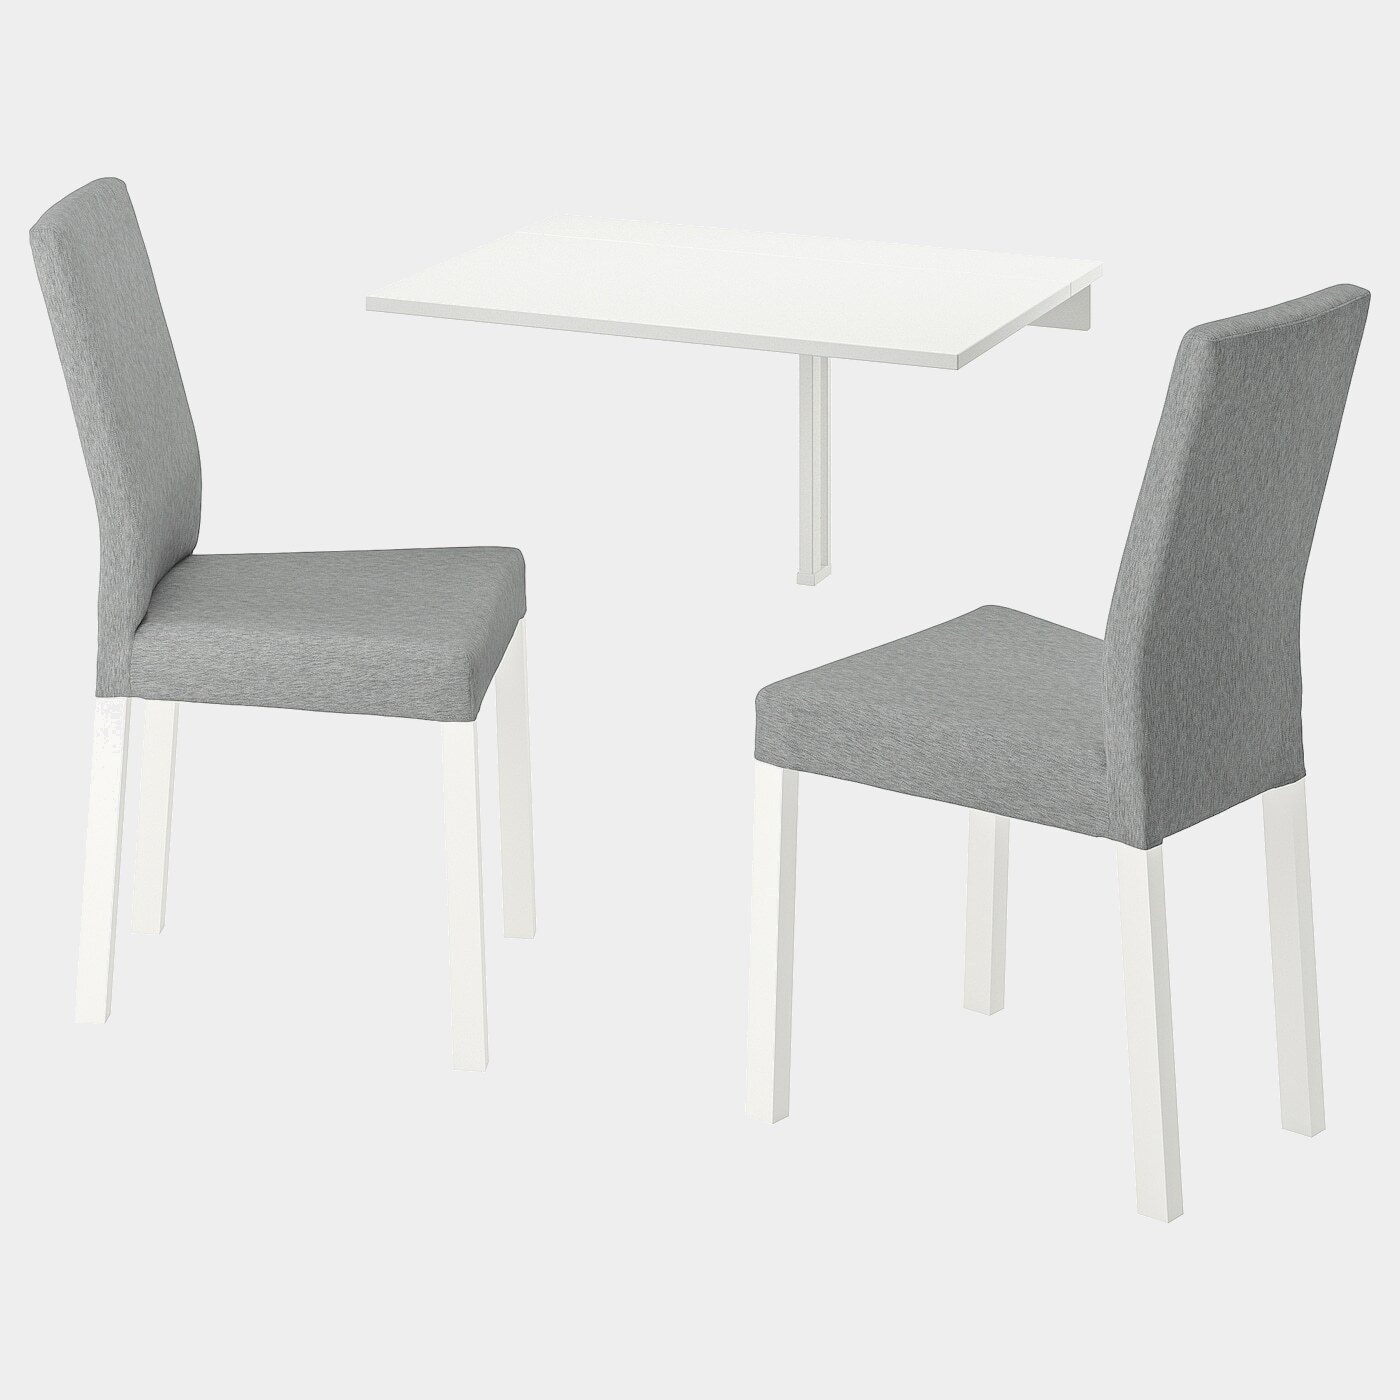 NORBERG / KÄTTIL Tisch und 2 Stühle  -  - Möbel Ideen für dein Zuhause von Home Trends. Möbel Trends von Social Media Influencer für dein Skandi Zuhause.